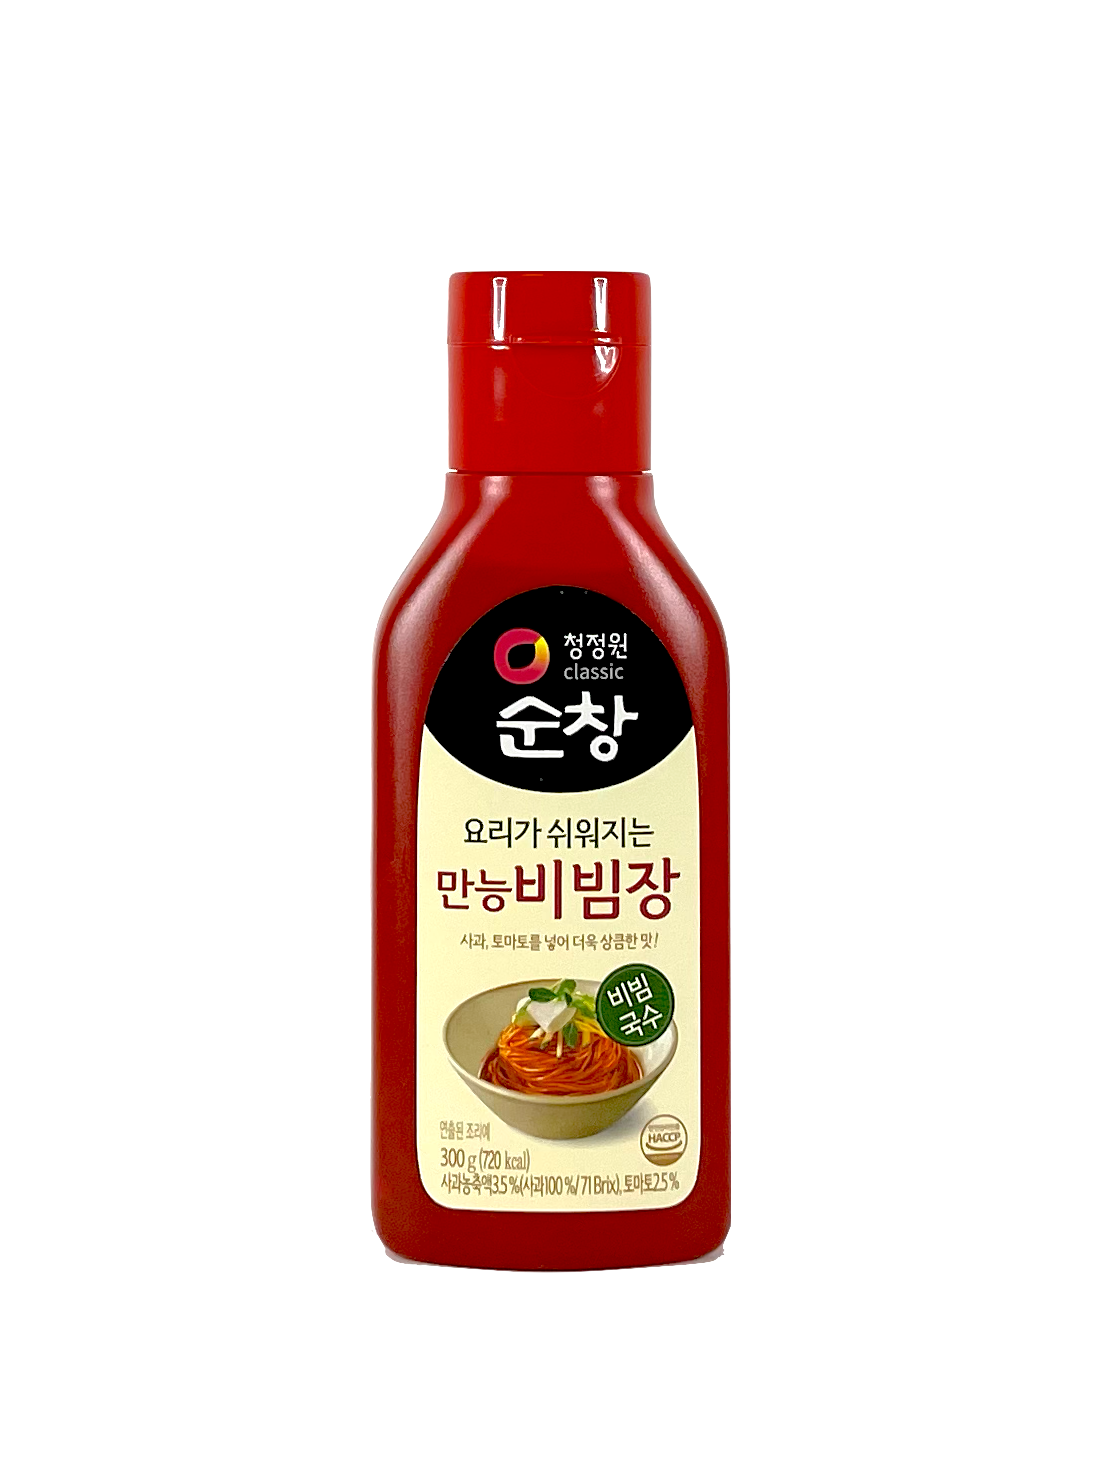 辣椒酱麻辣/酸辣 专用于凉拌面/冷菜 300g CJW 韩国